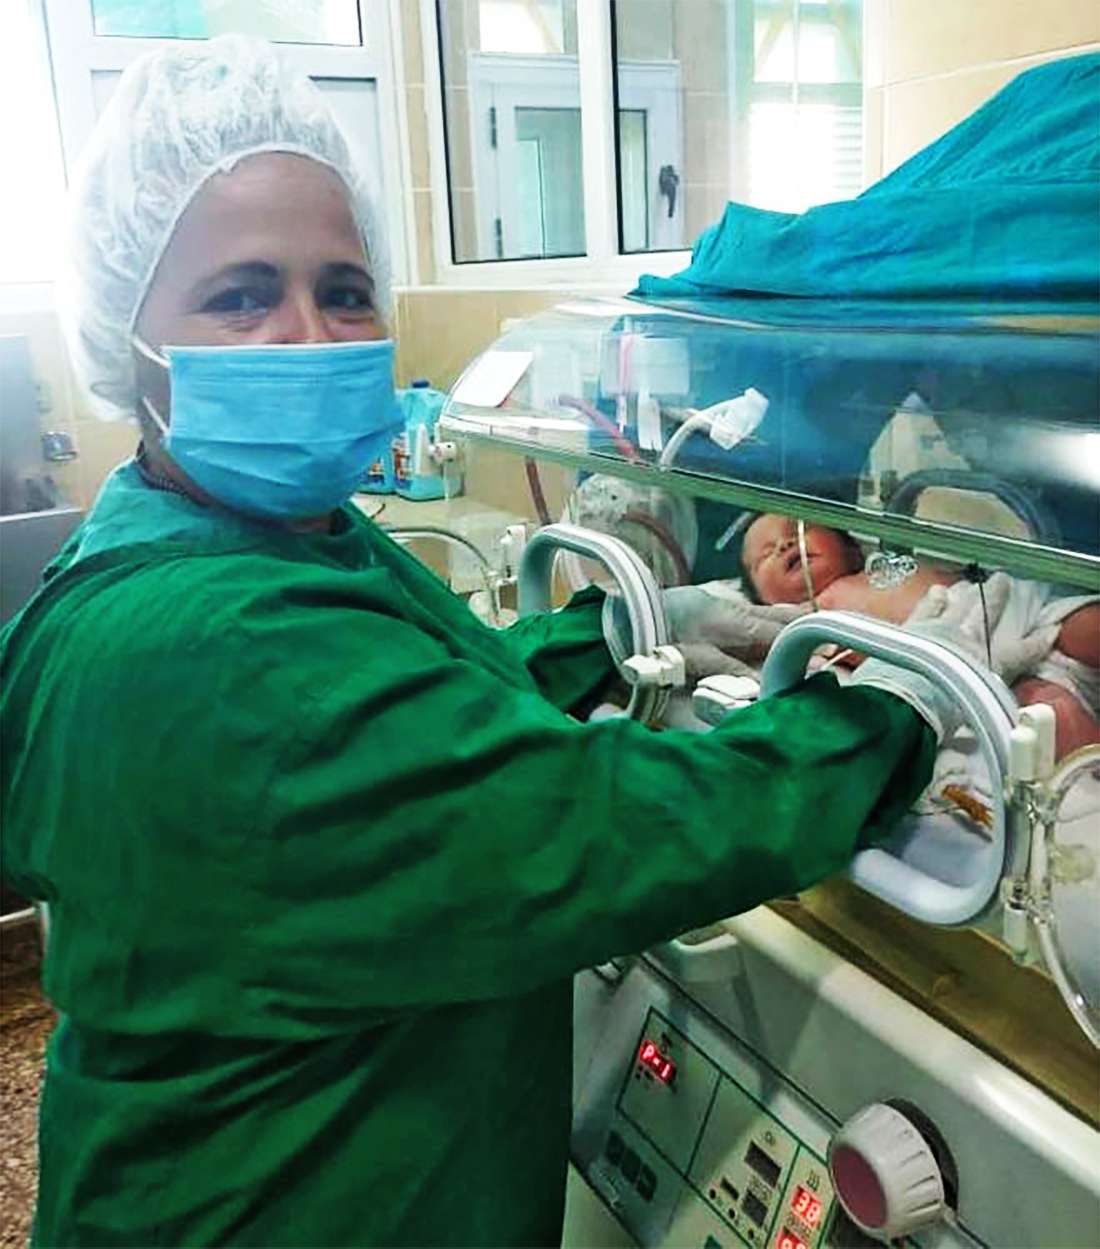 Helen 1ra niña nace en Cuba de madre portadora de COVID 19 en estado crítico